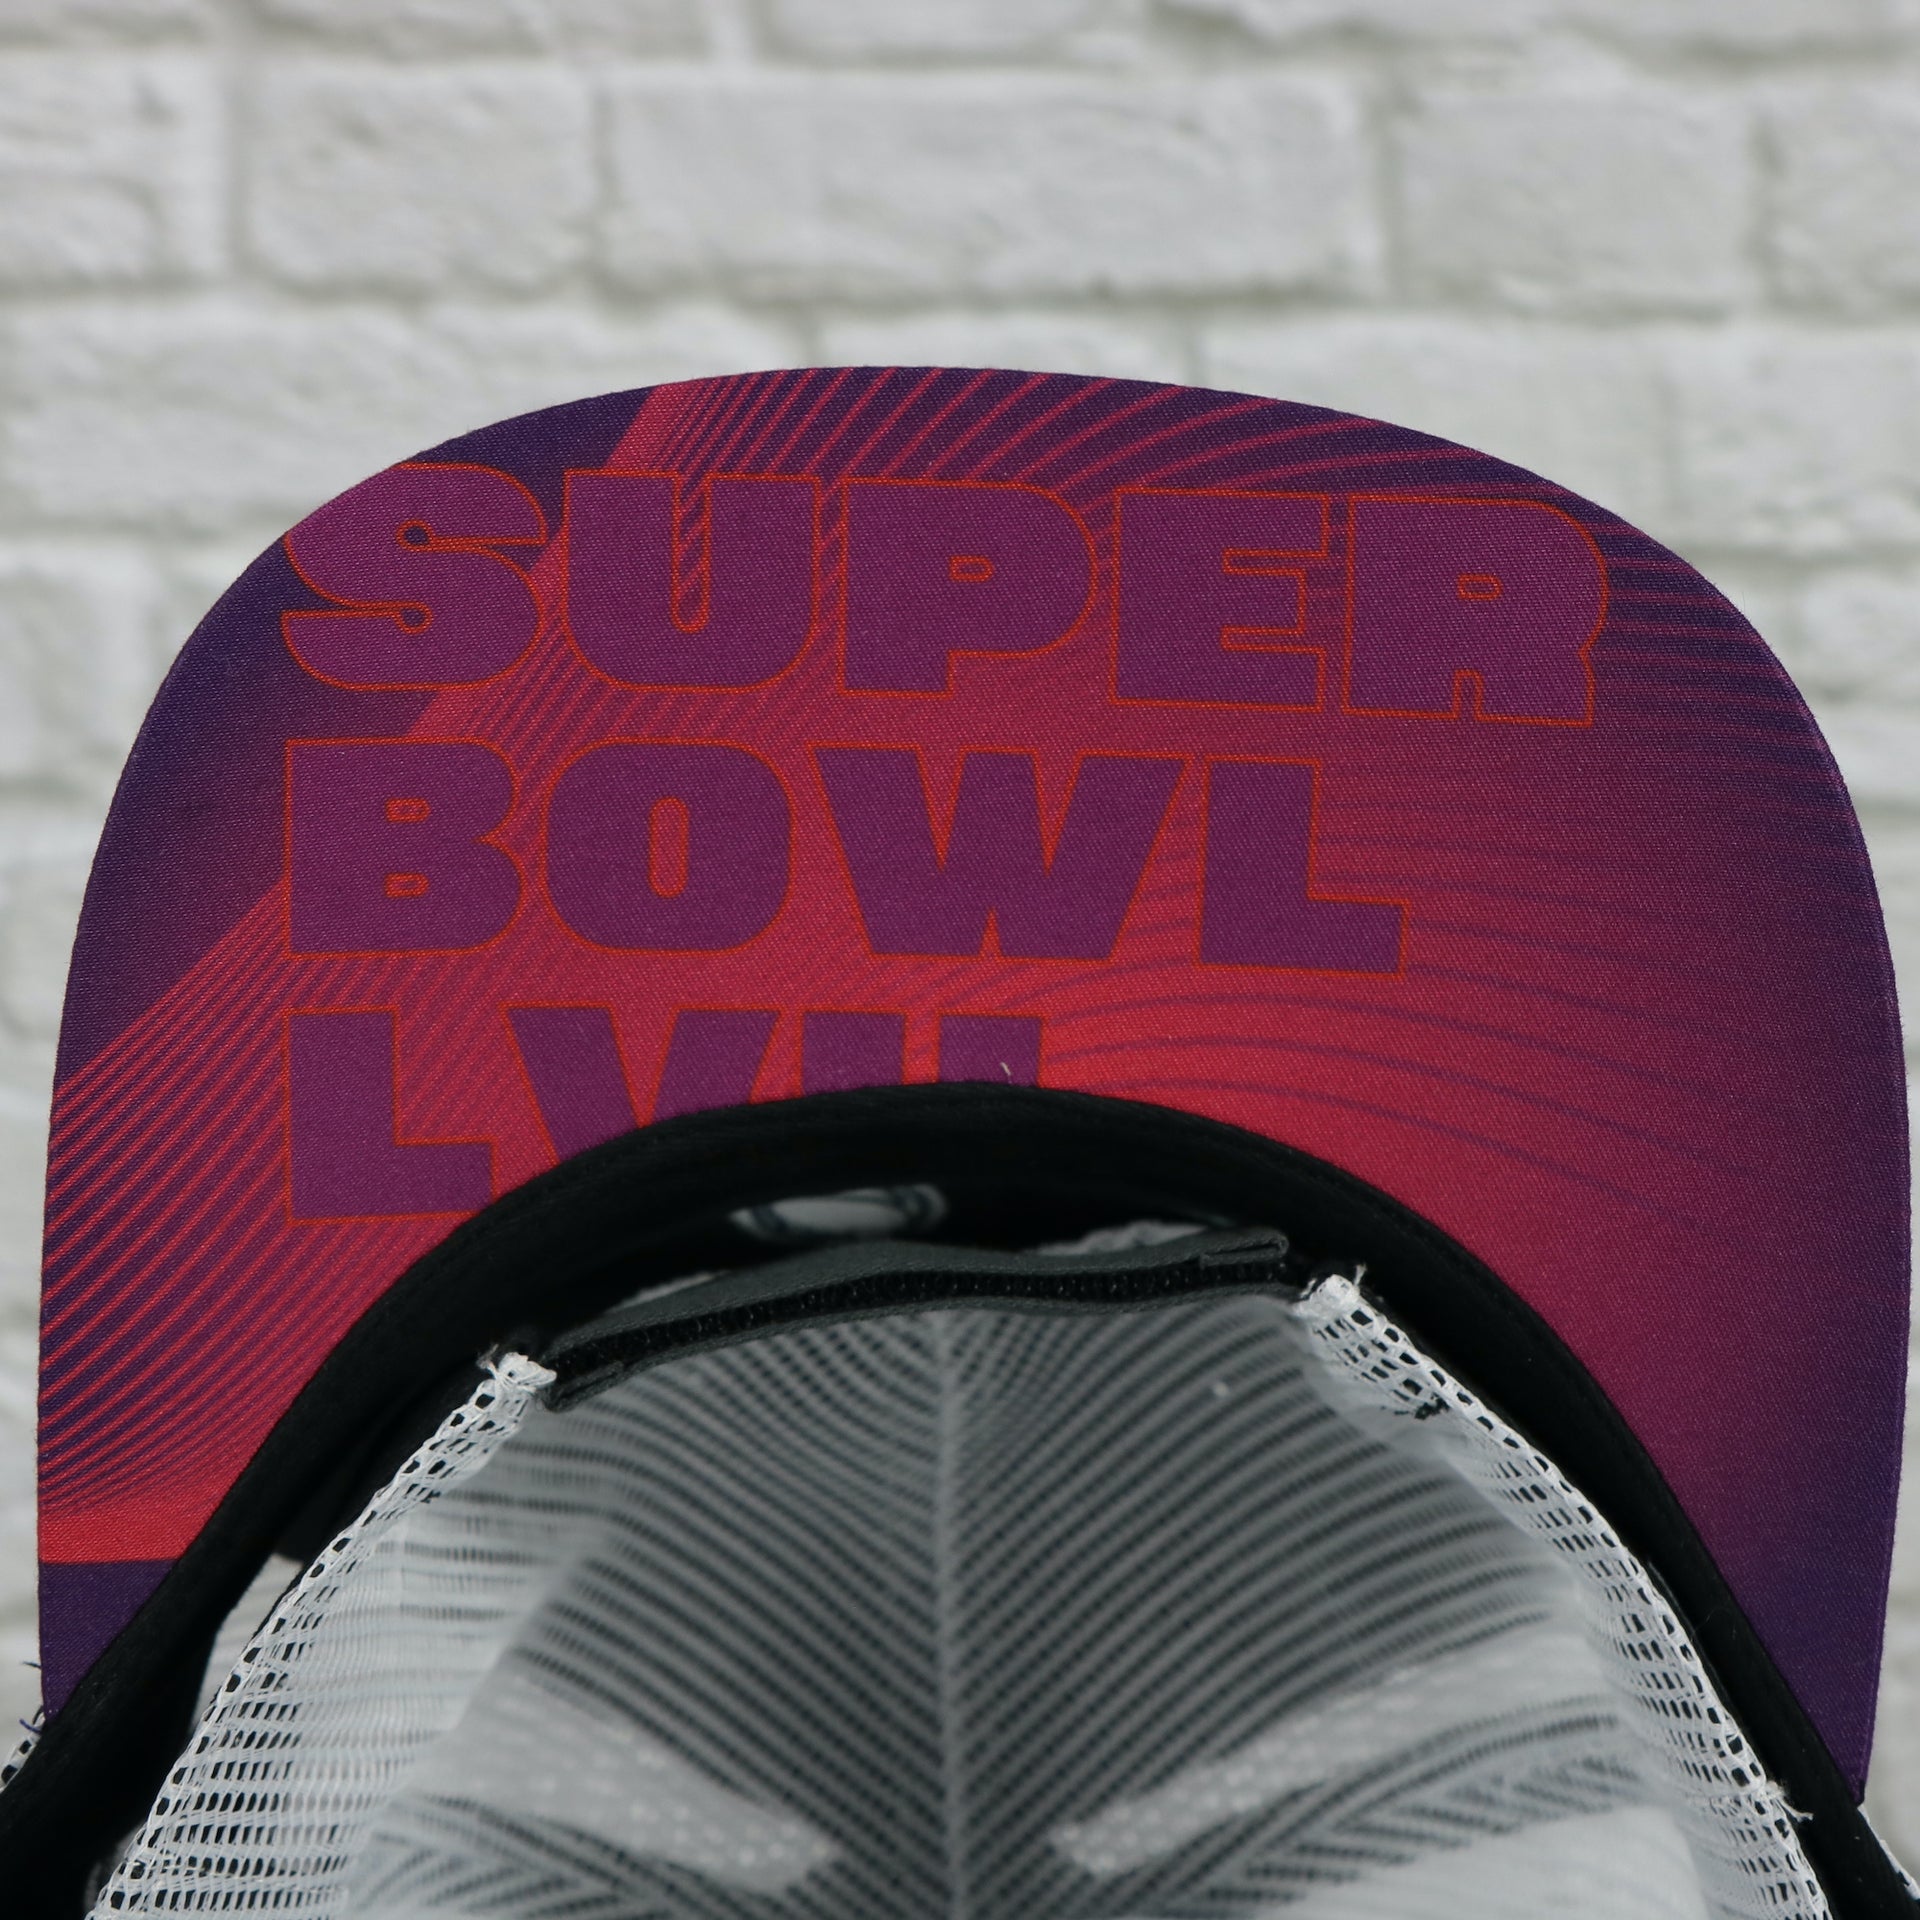 Super Bowl LVII under visor on the Philadelphia Eagles Super Bowl LVII (Super Bowl 57) Side Patch Charcoal/White Trucker Hat